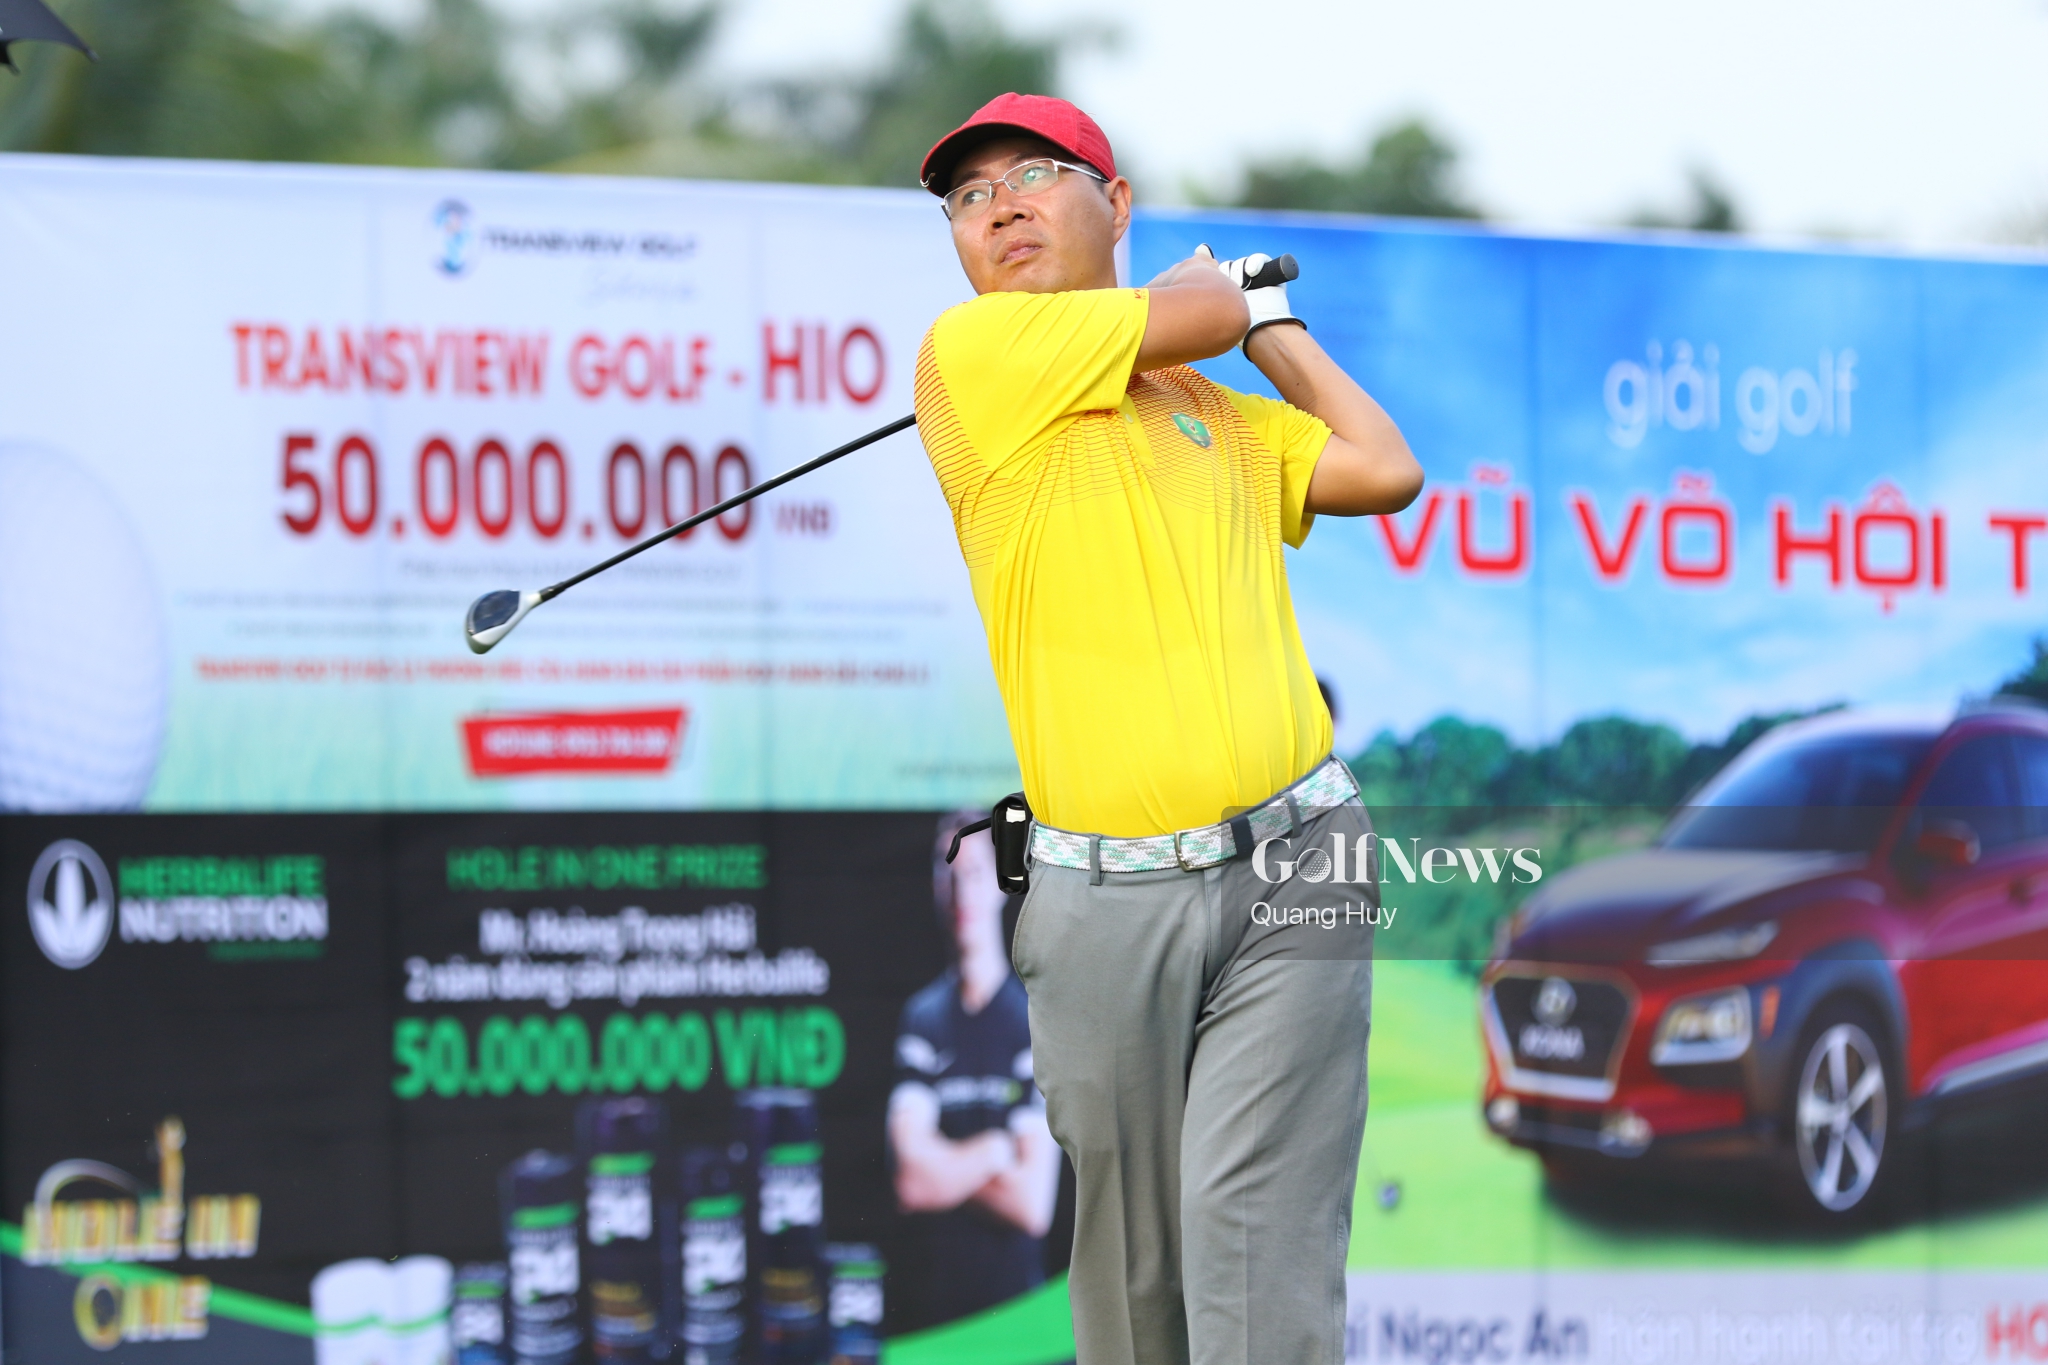 Giải golf 'Vũ - Võ hội tụ' đã chính thức bùng nổ với sự tham gia của hơn 144 golfer